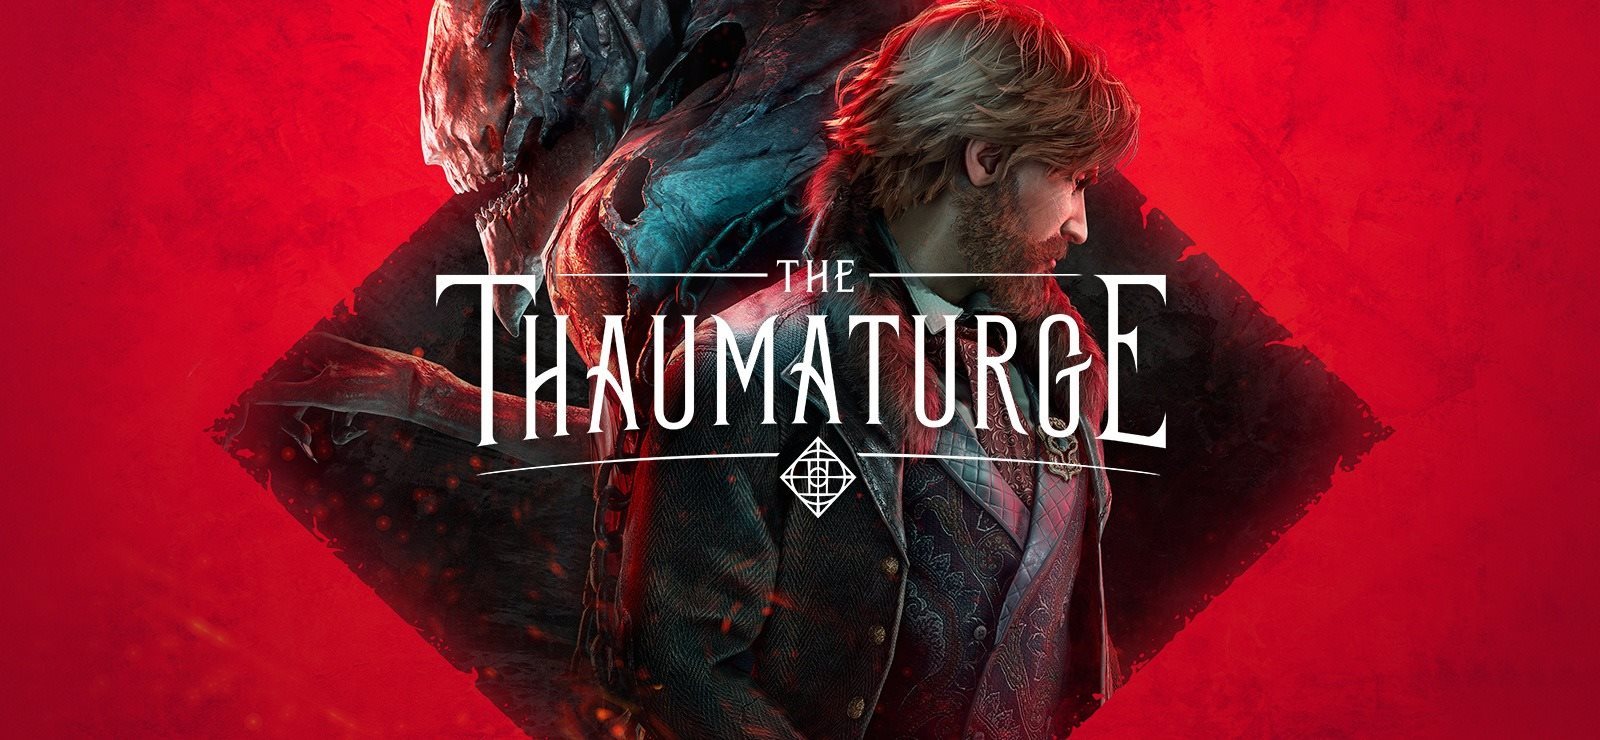 The Thaumaturge - PS5